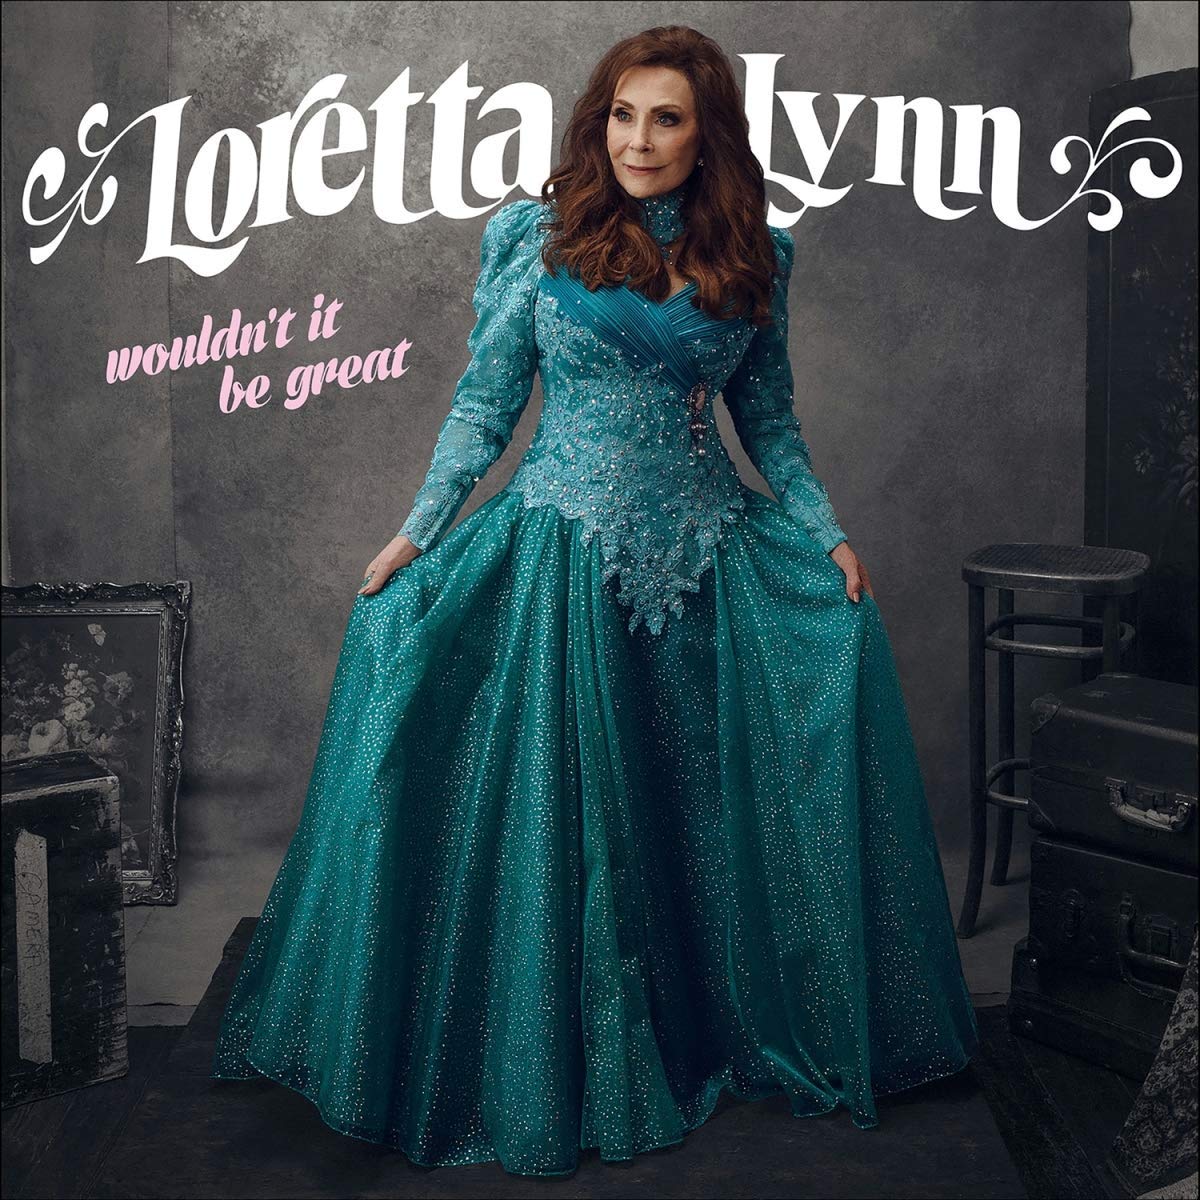 Loretta Lynn - Wouldn't It Be Great CD